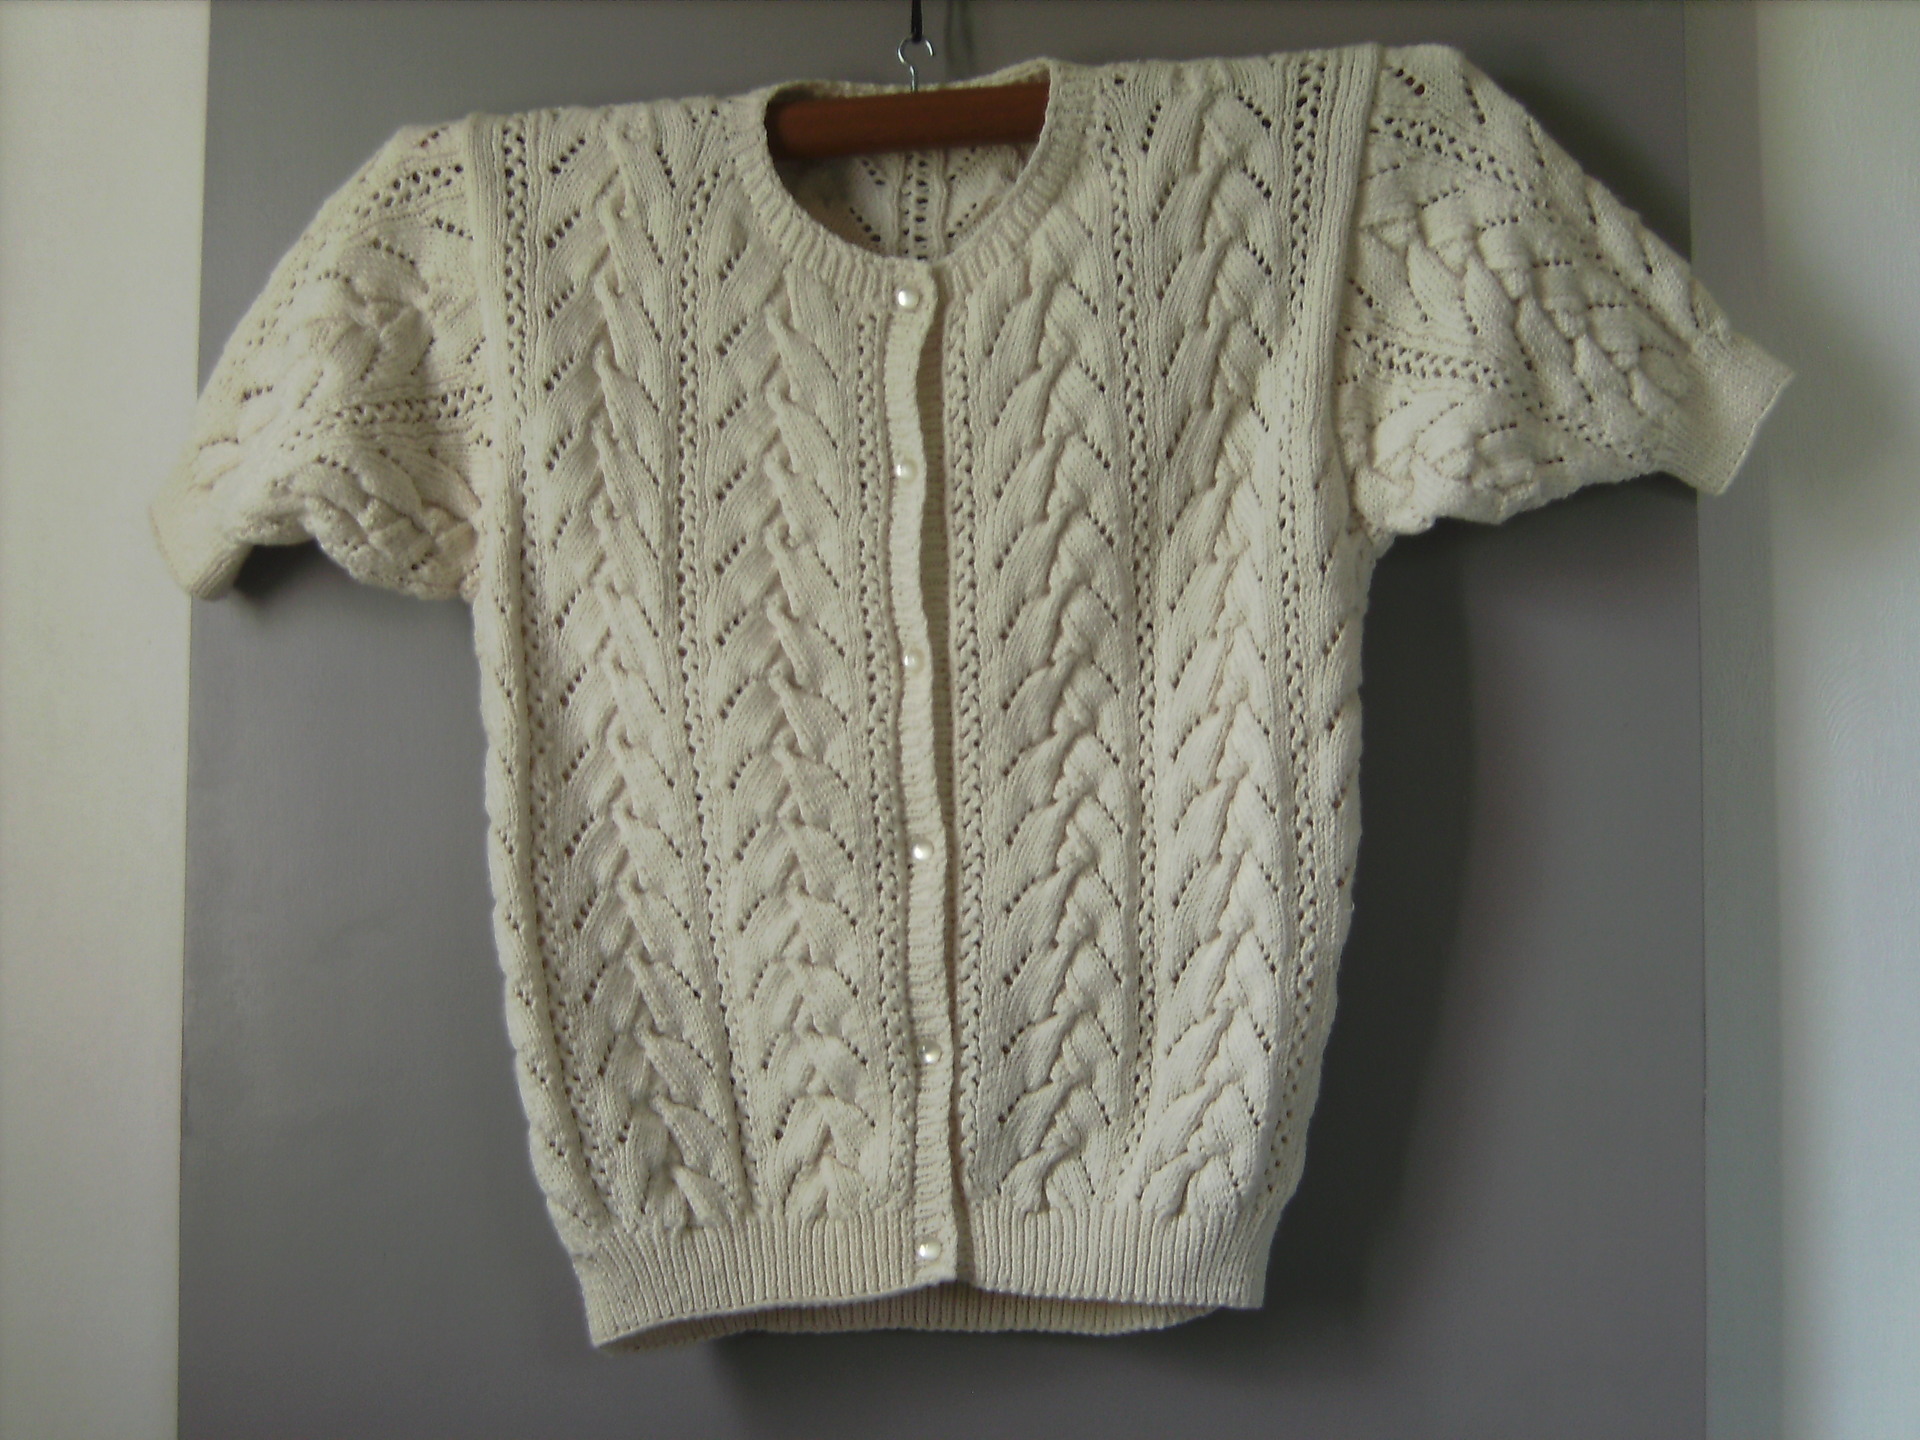 tricoter un gilet manches courtes pour femme